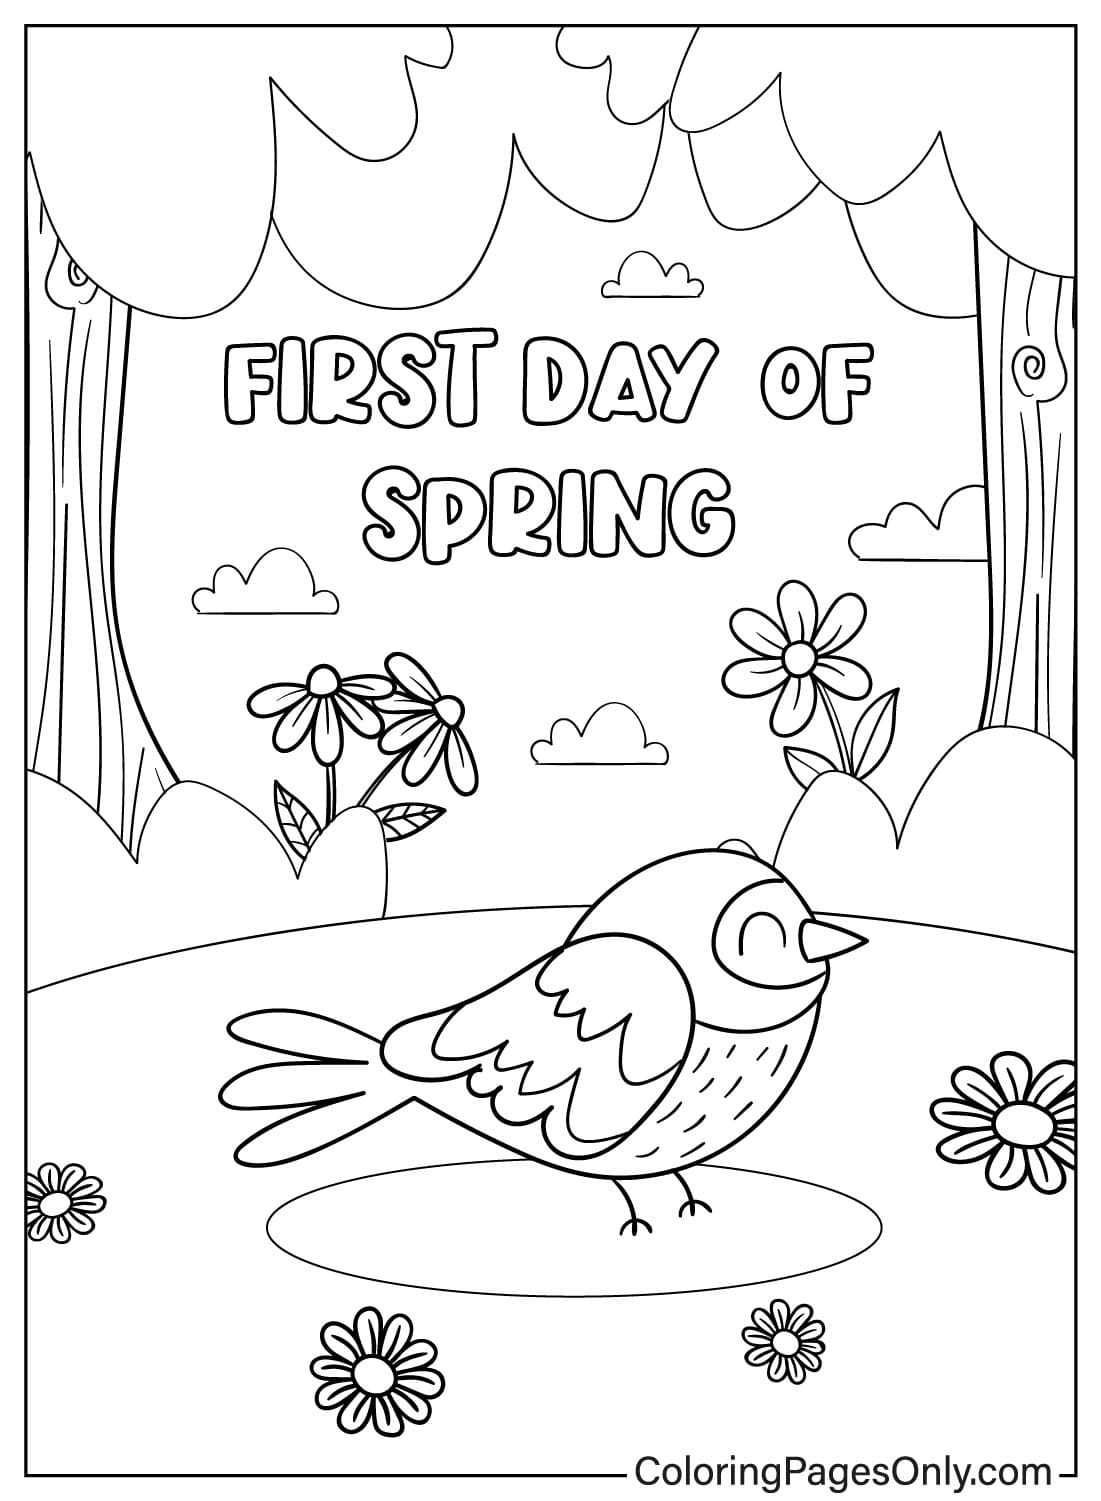 Página para colorir do primeiro dia de primavera do primeiro dia de primavera